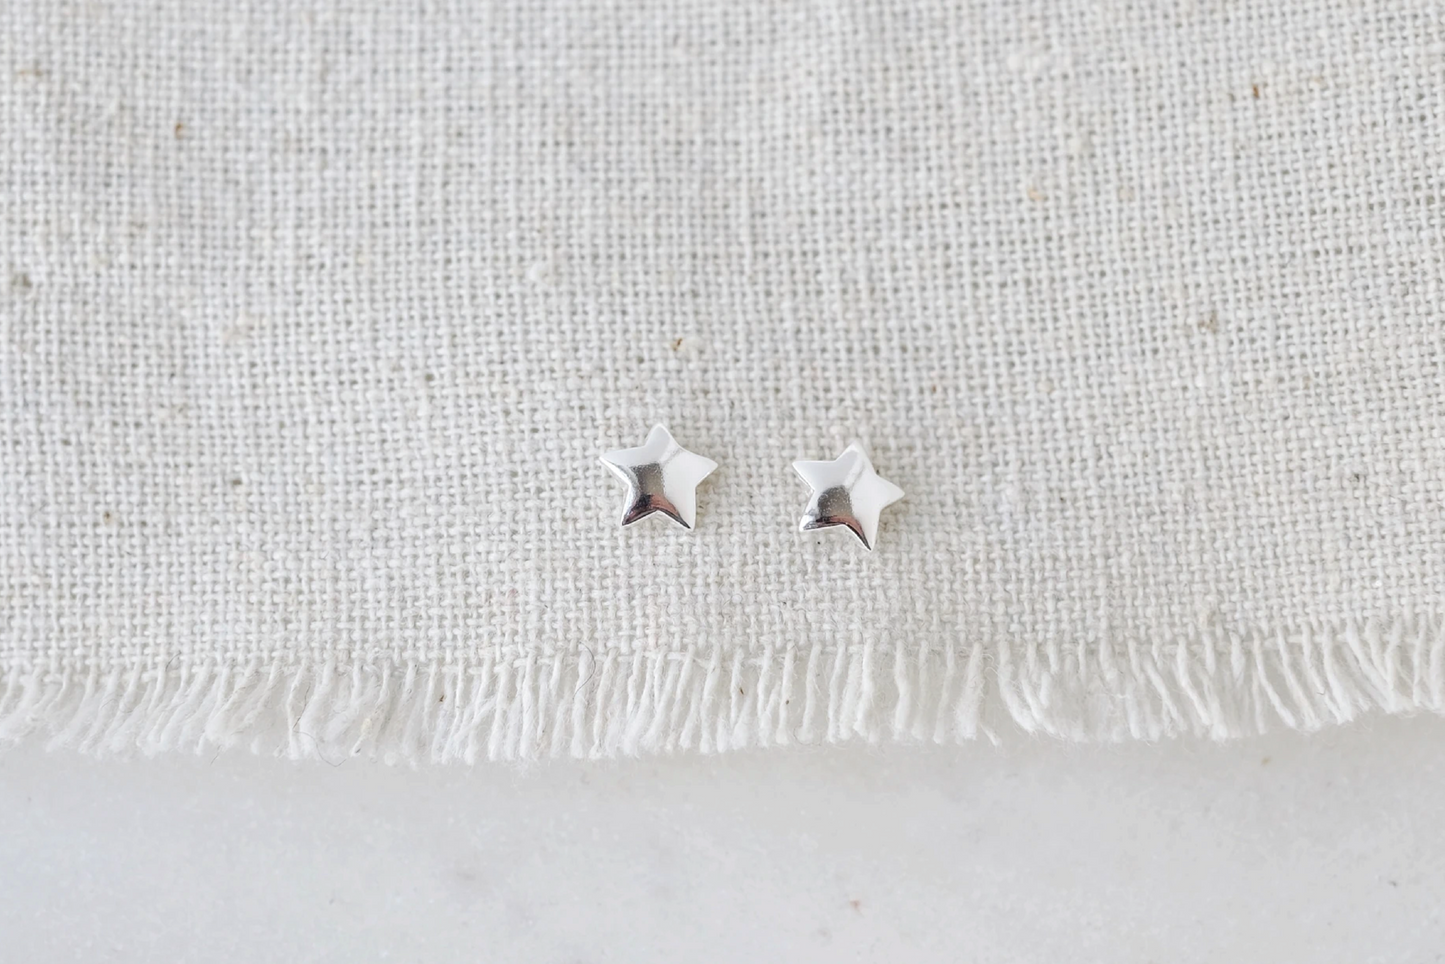 Silver Star Earrings